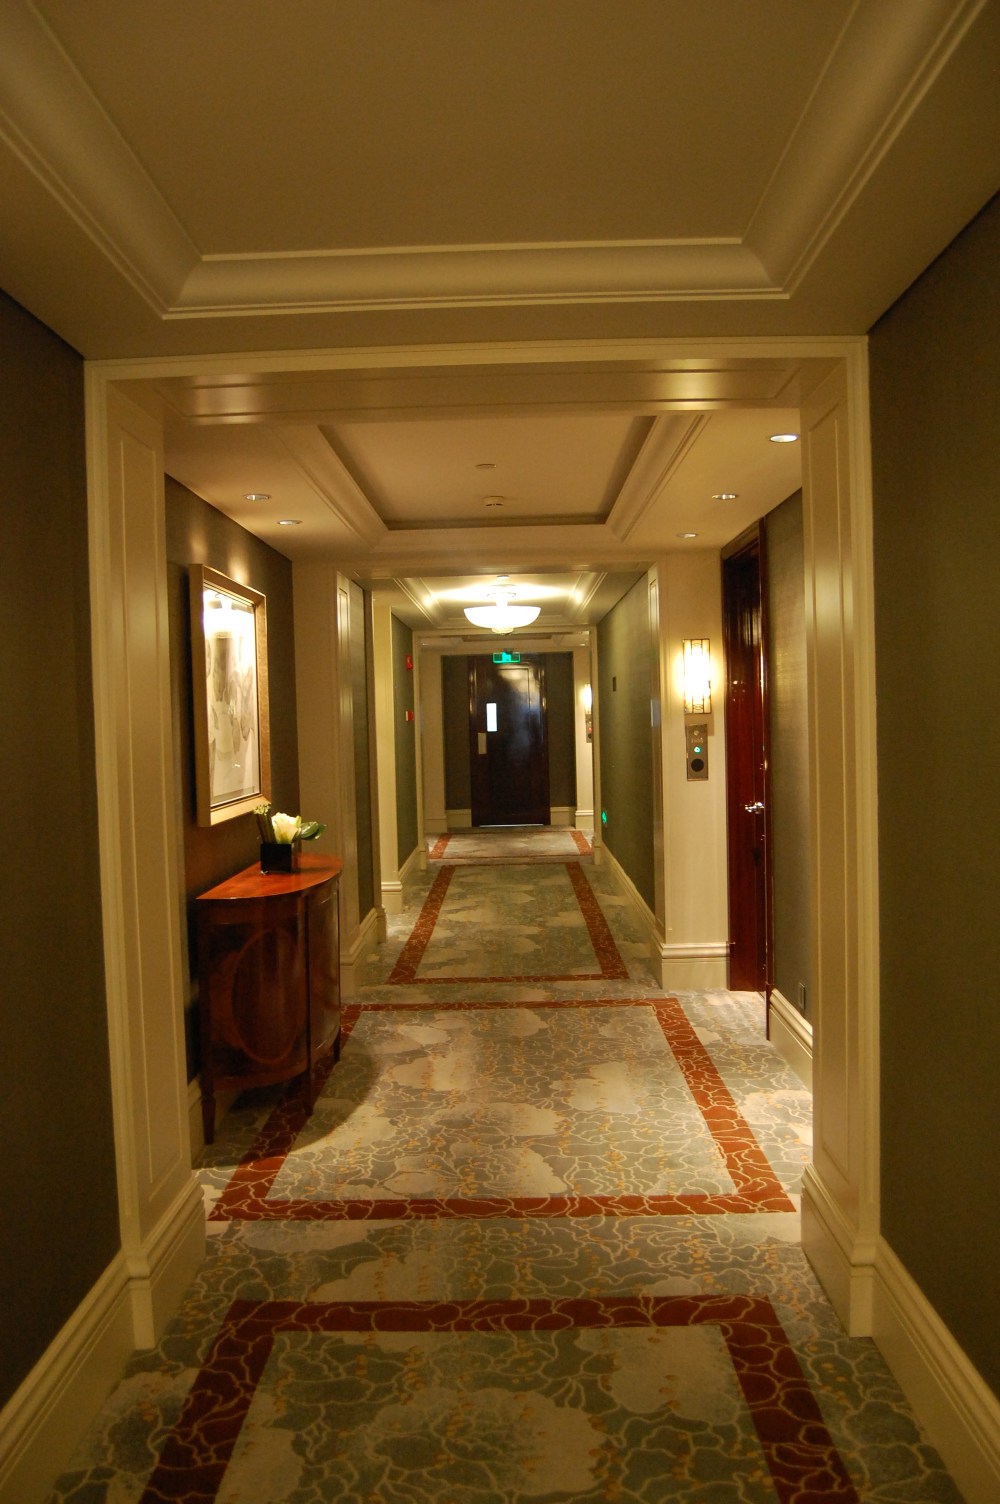 上海华尔道夫酒店(The Waldorf Astoria OnTheBund)(HBA)10.9第10页更新_DSC_0673.JPG